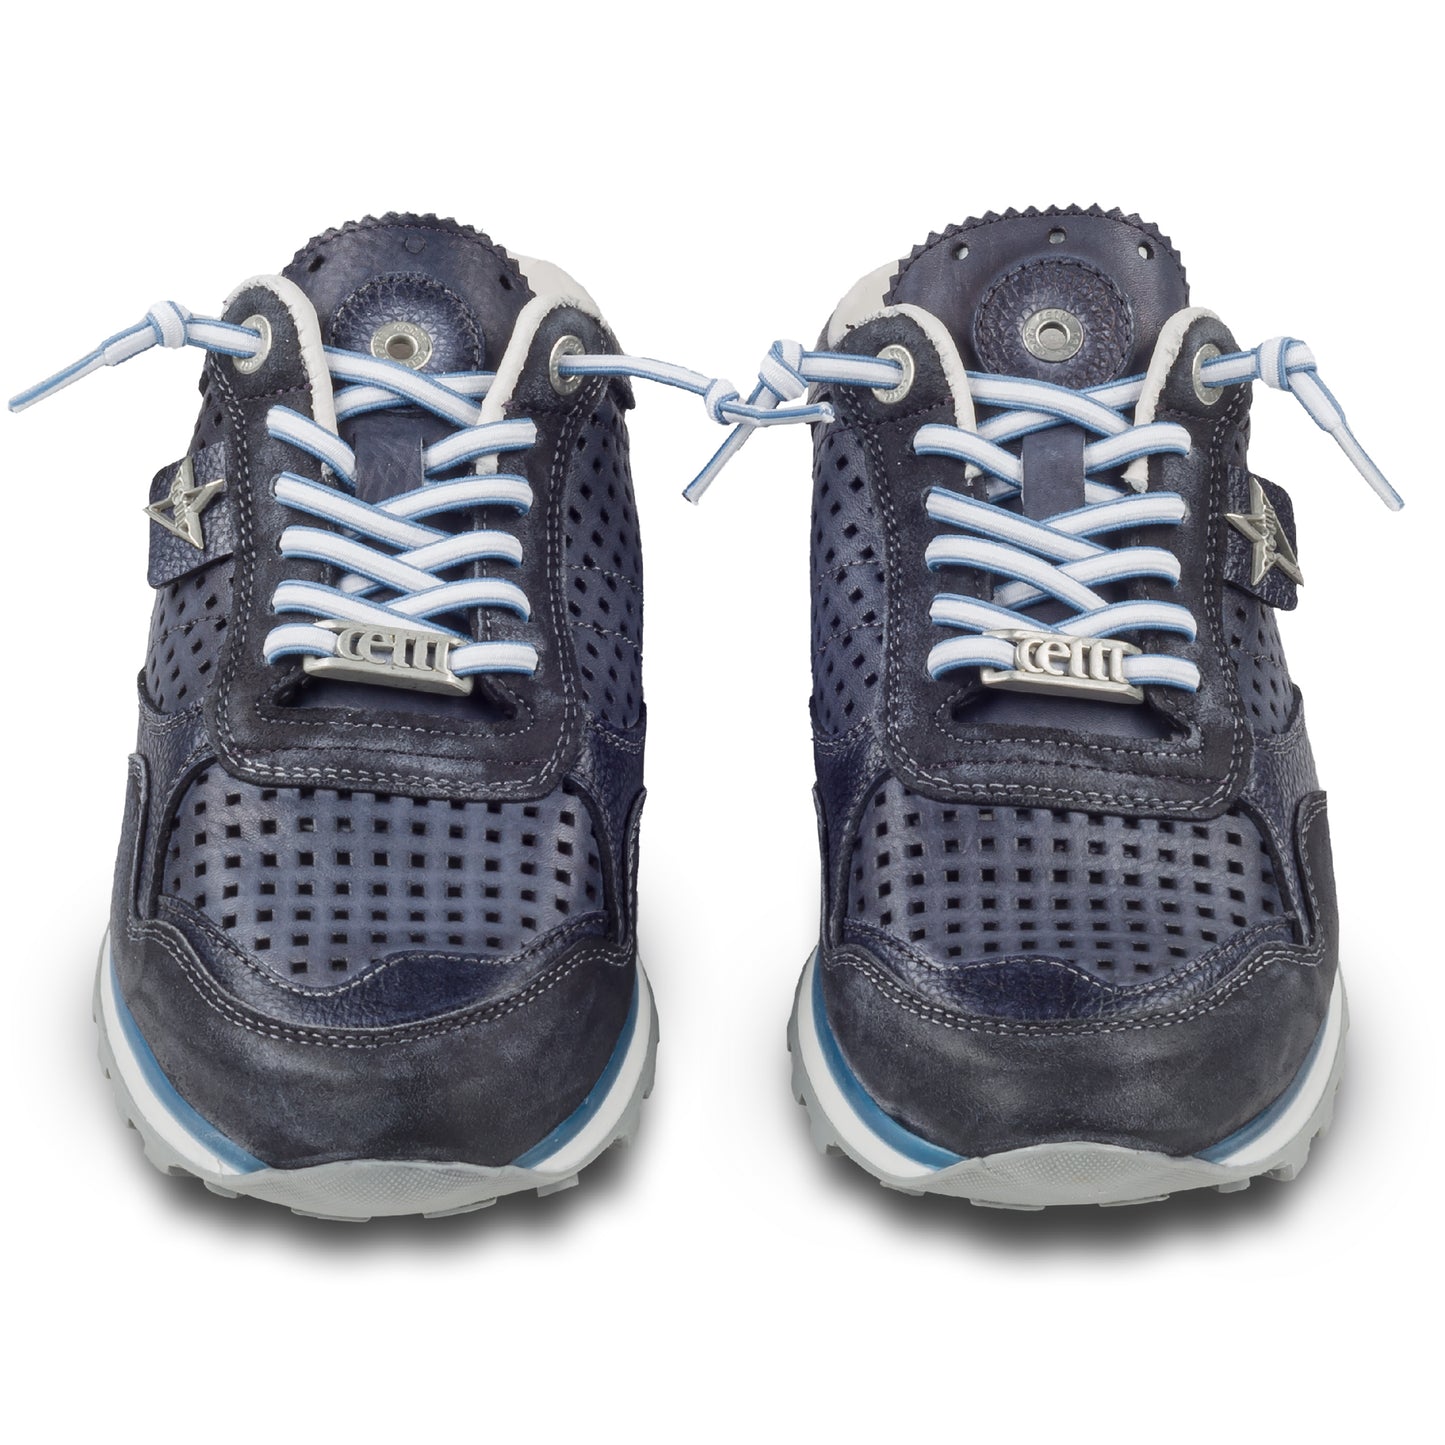 CETTI Herren Leder Sneaker-Mule, Modell „C848“ in dunkelblau / grau (used tin antracita), Made in Spain. Ansicht der Ferse und Sohlenunterseite. Paarweise Ansicht von vorne.  